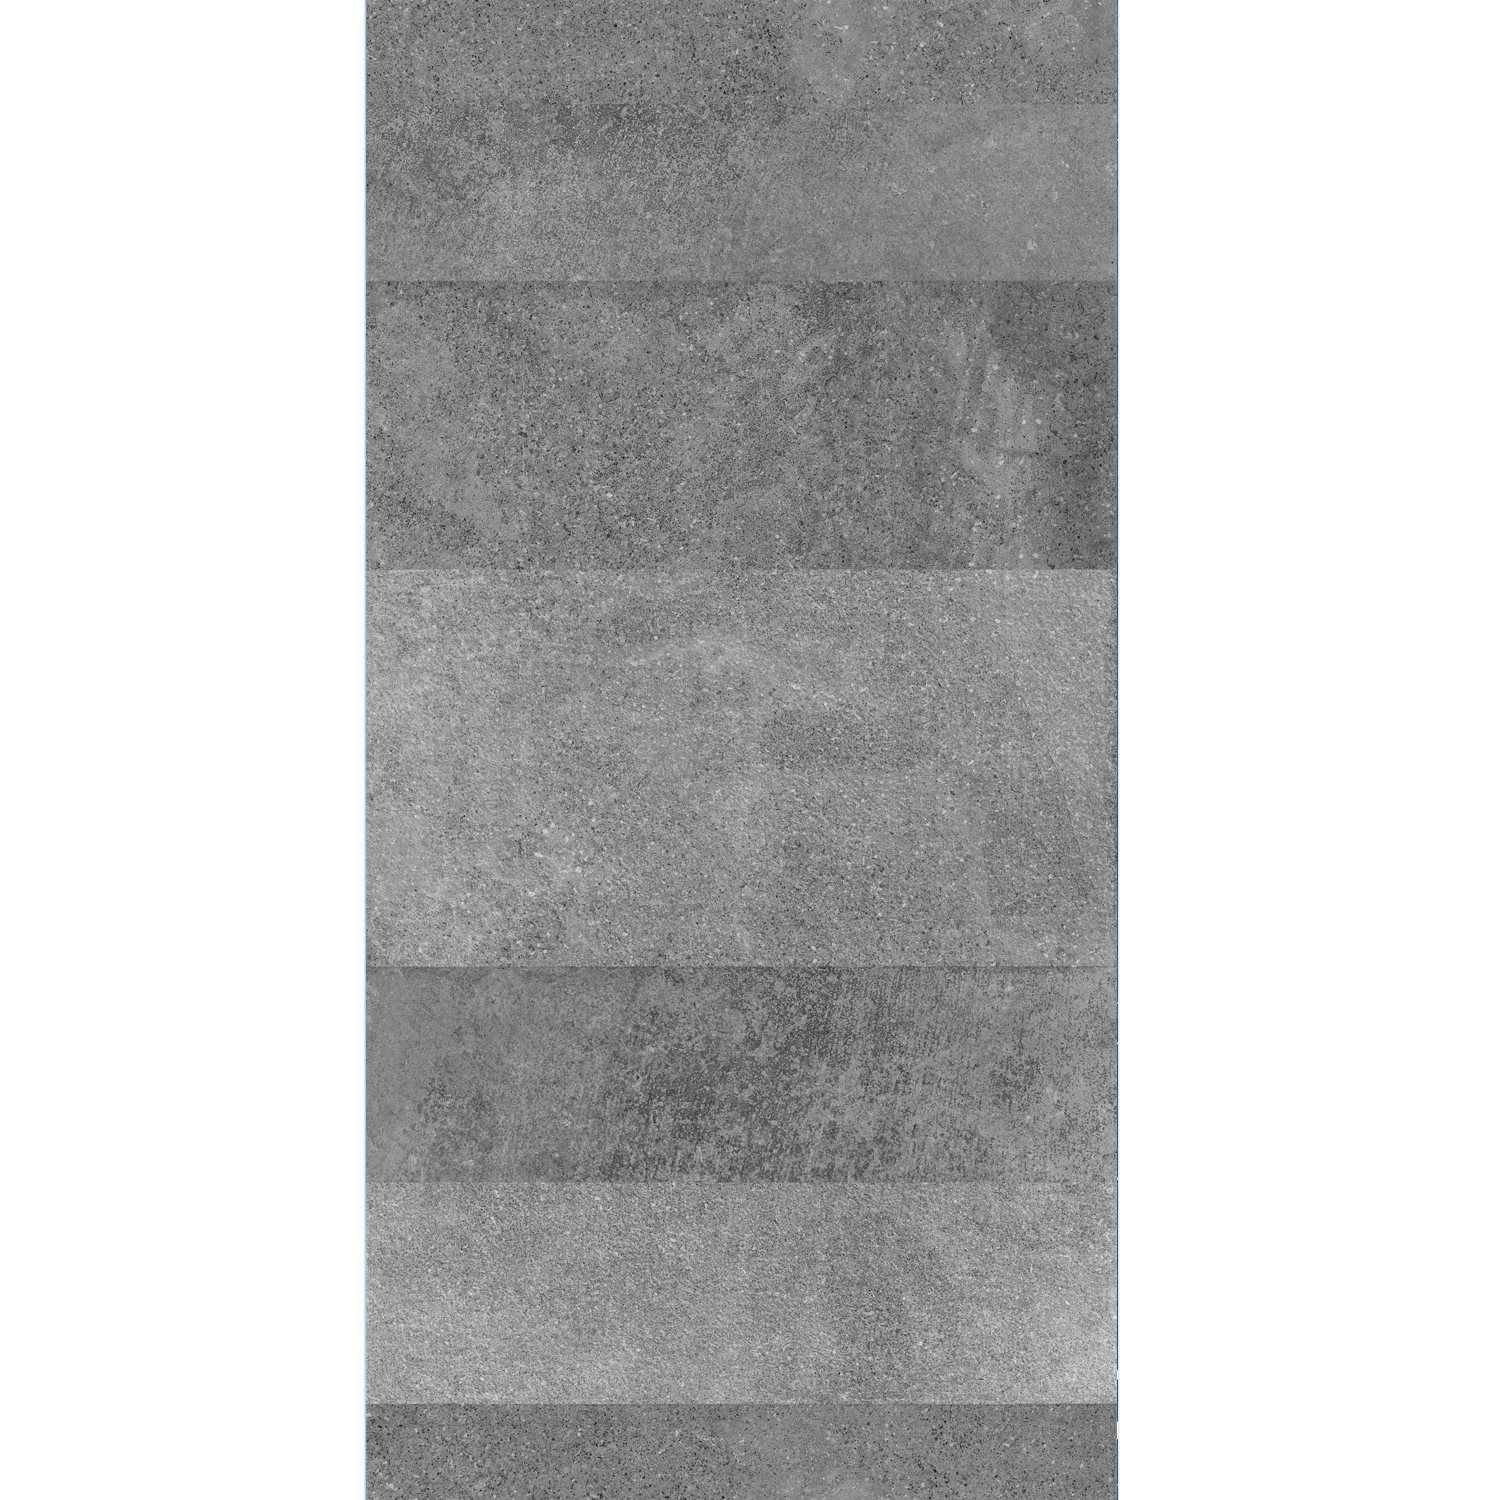 Podlahové Dlaždice Torino Lappato Antracitová 60x120cm